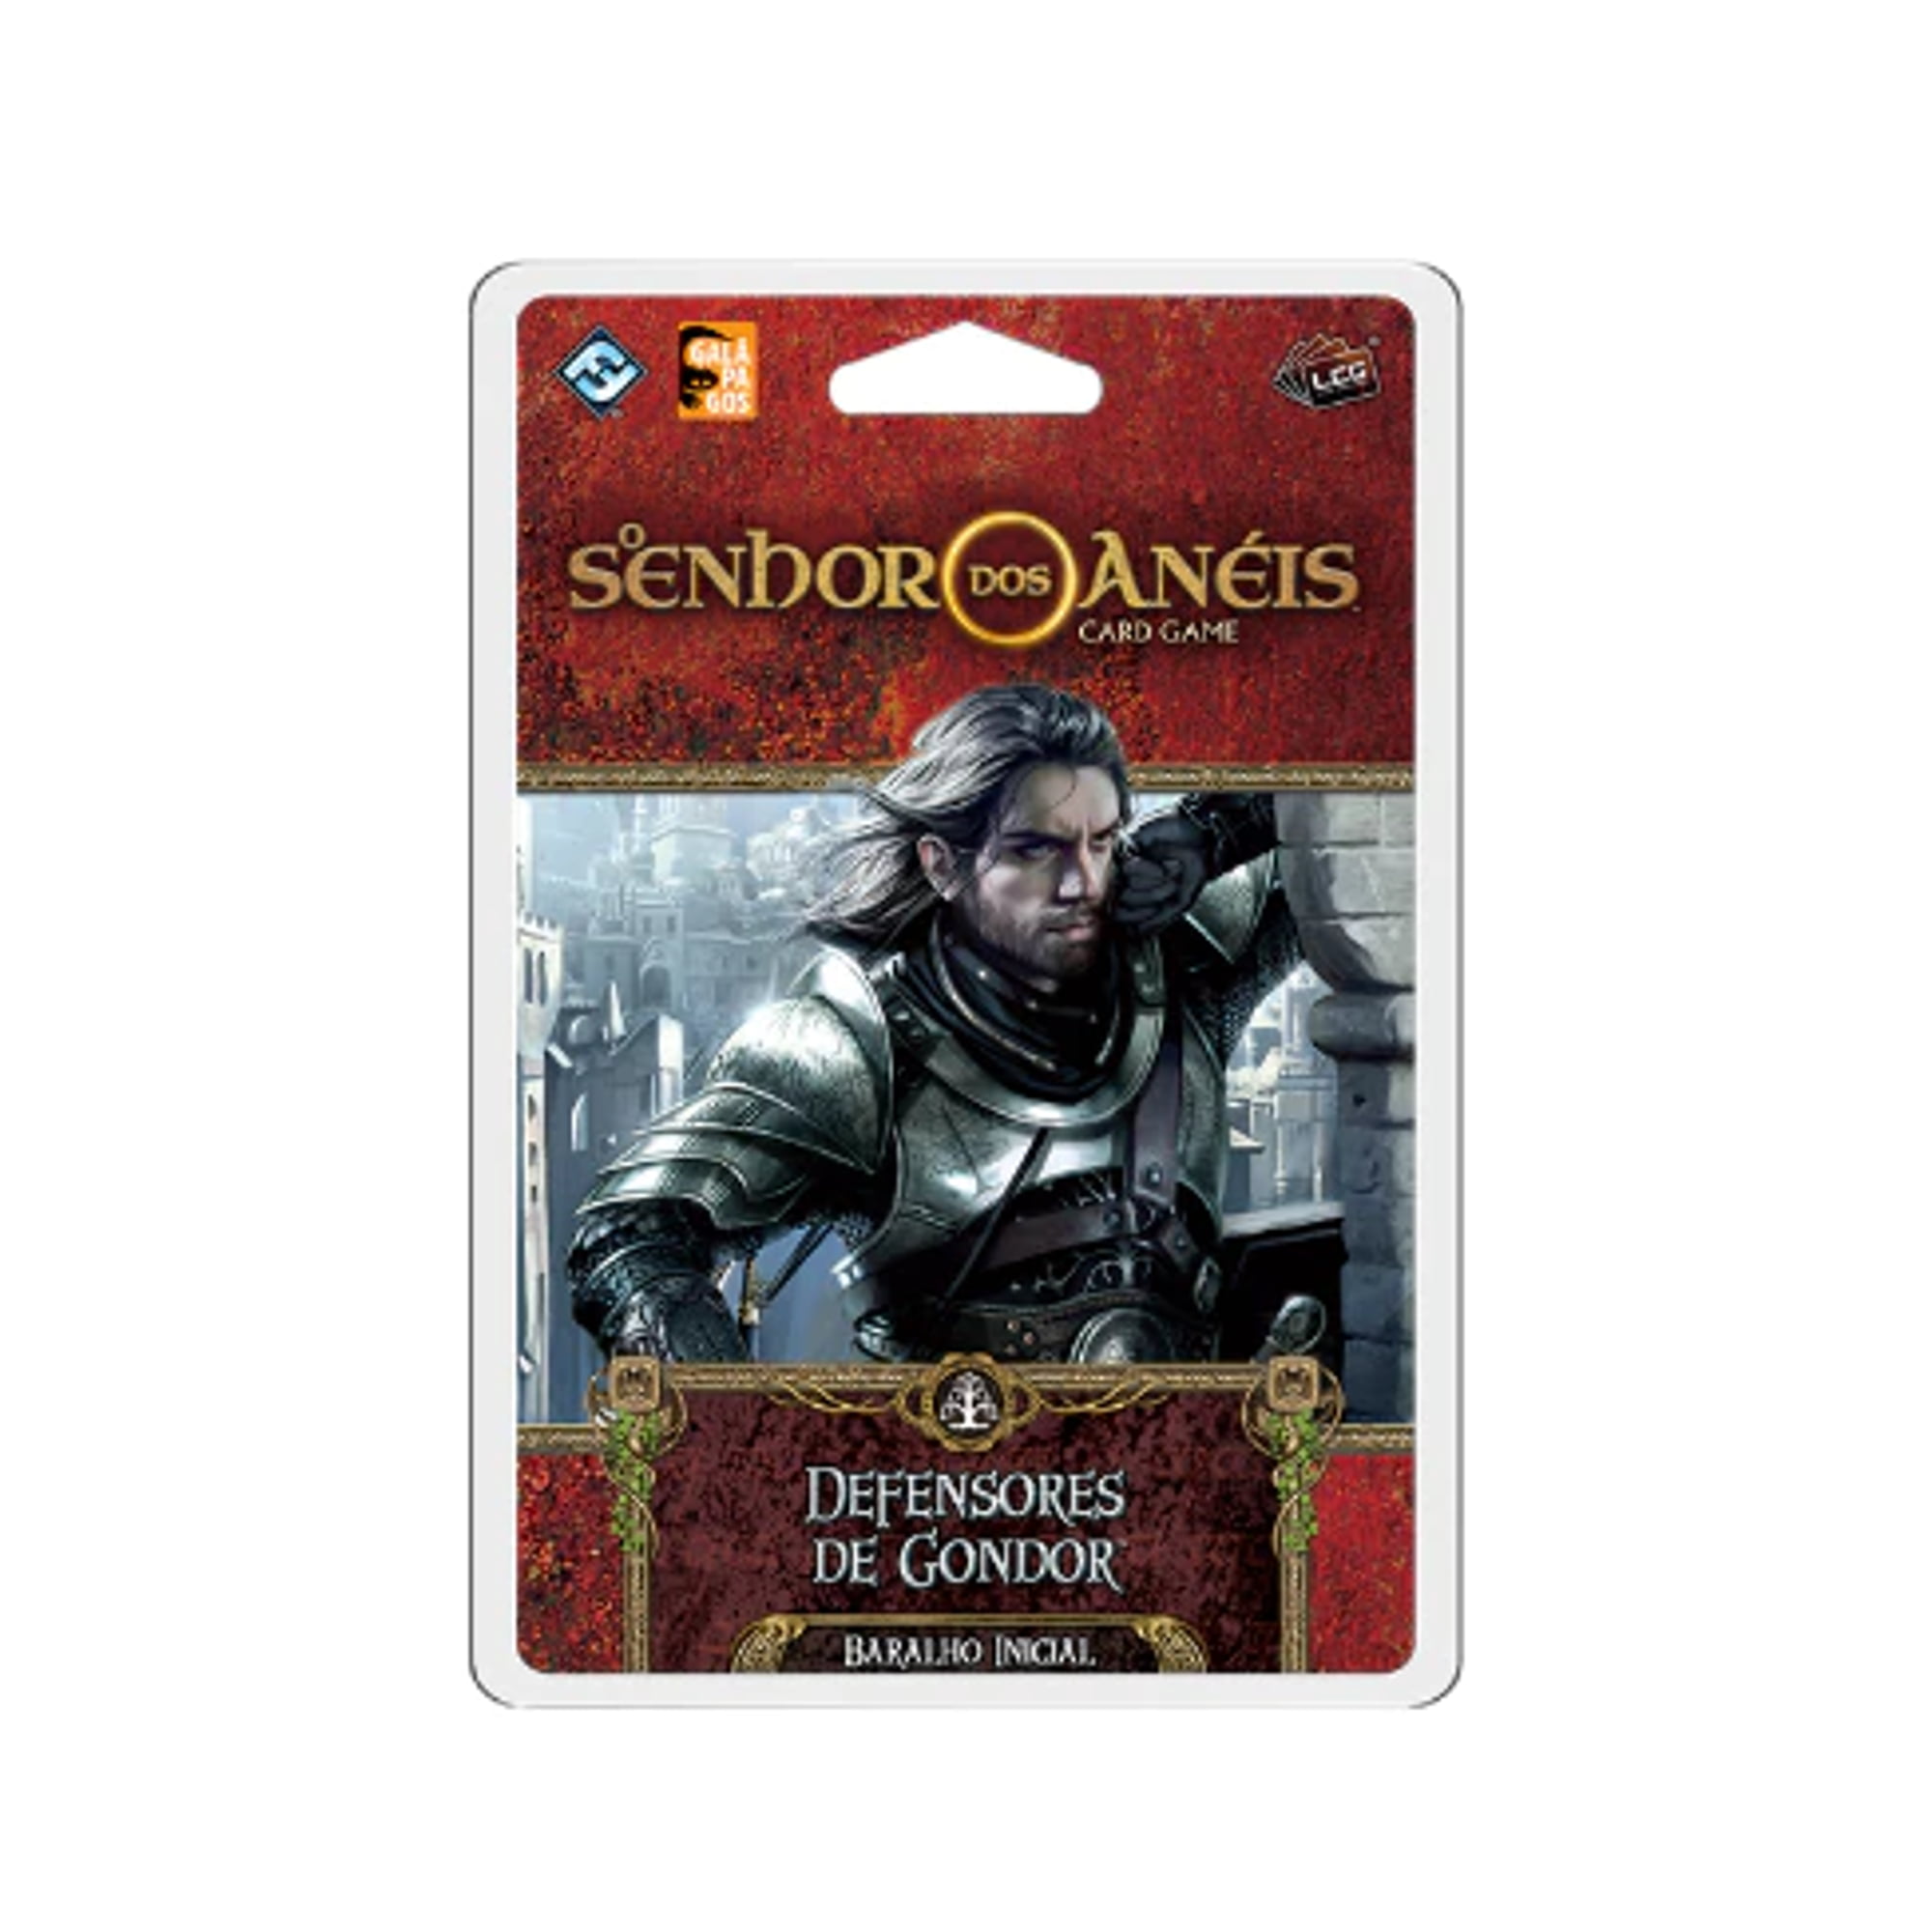 Expansão O Senhor dos Anéis: Card Game - Defensores de Gondor 